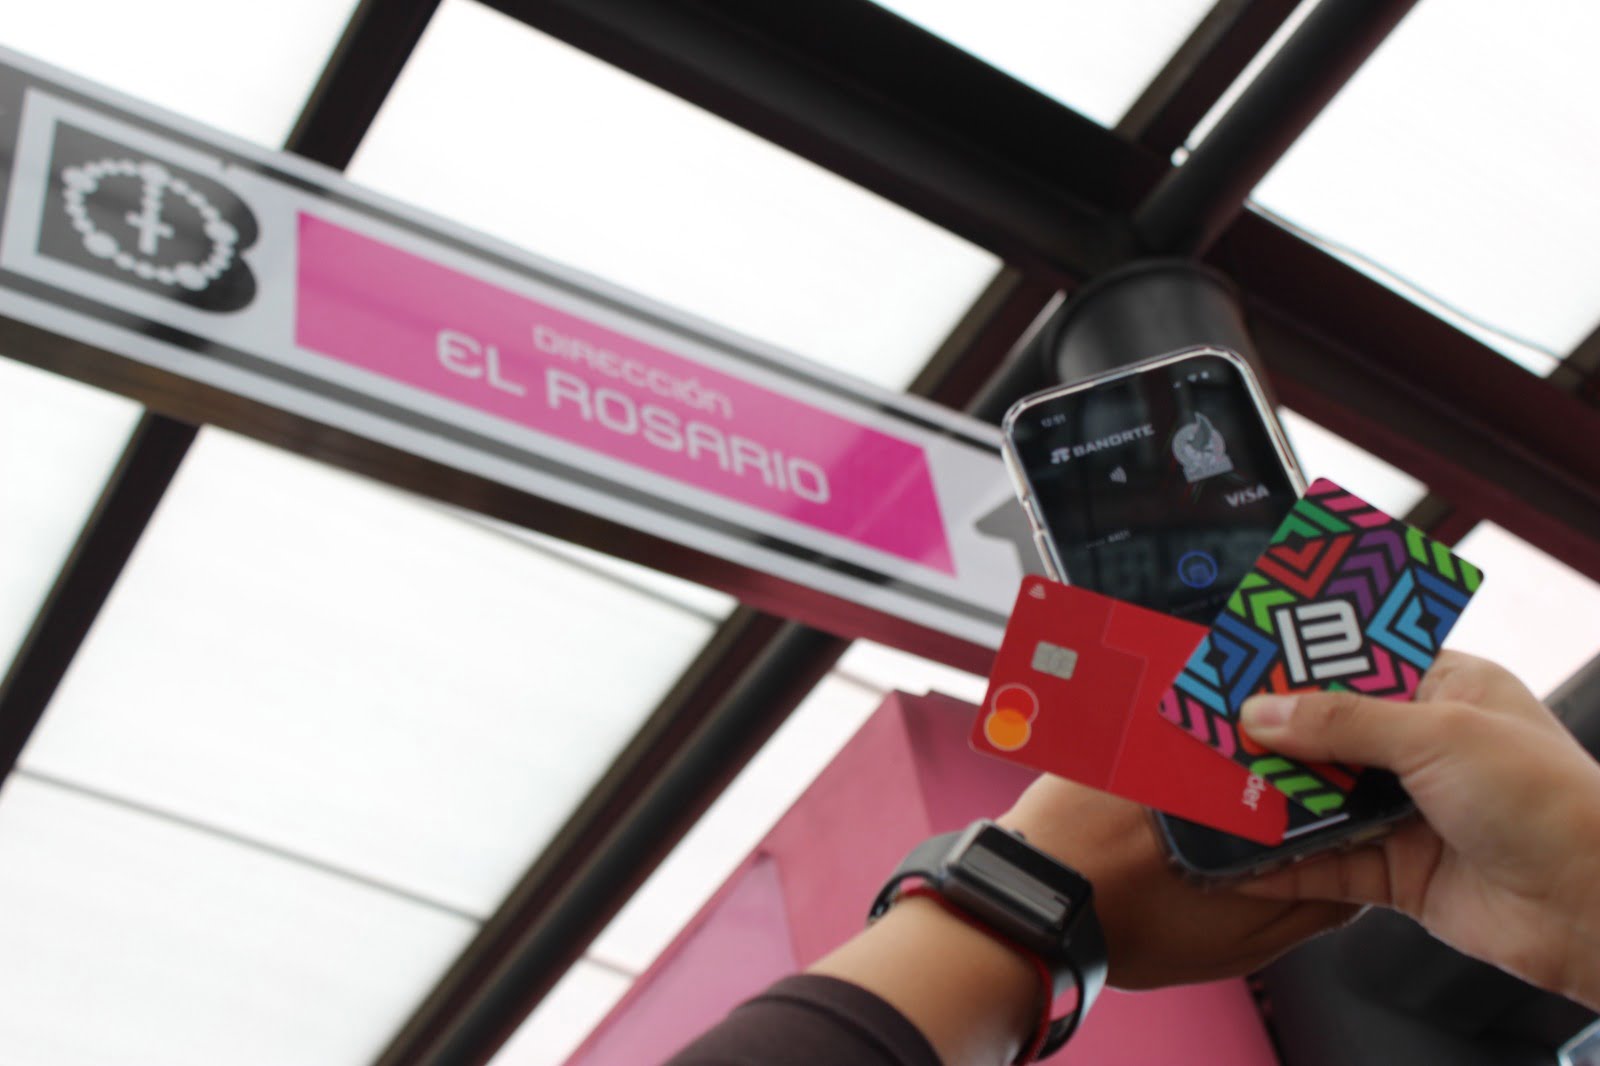 Metrobús pone en marcha nuevo sistema de pago y acceso en Línea 6